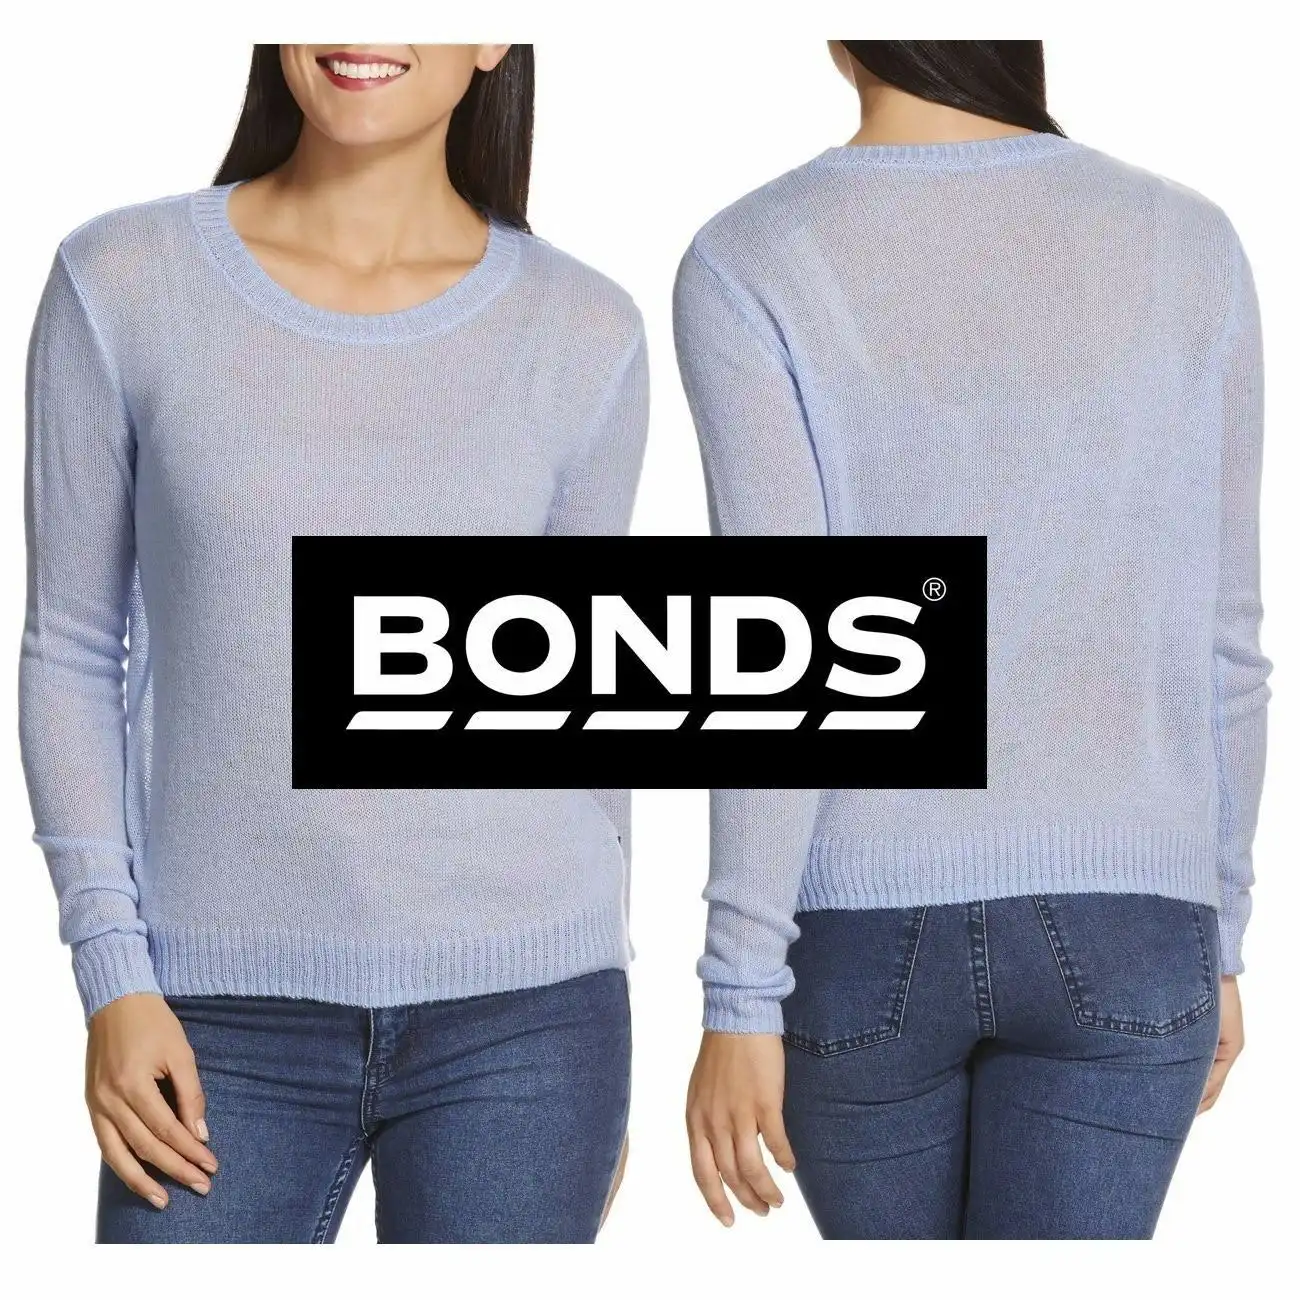 Bonds Womens Long Sleeve Lightweight Crew Pullover Jumper Top Blue Size Xs S M L